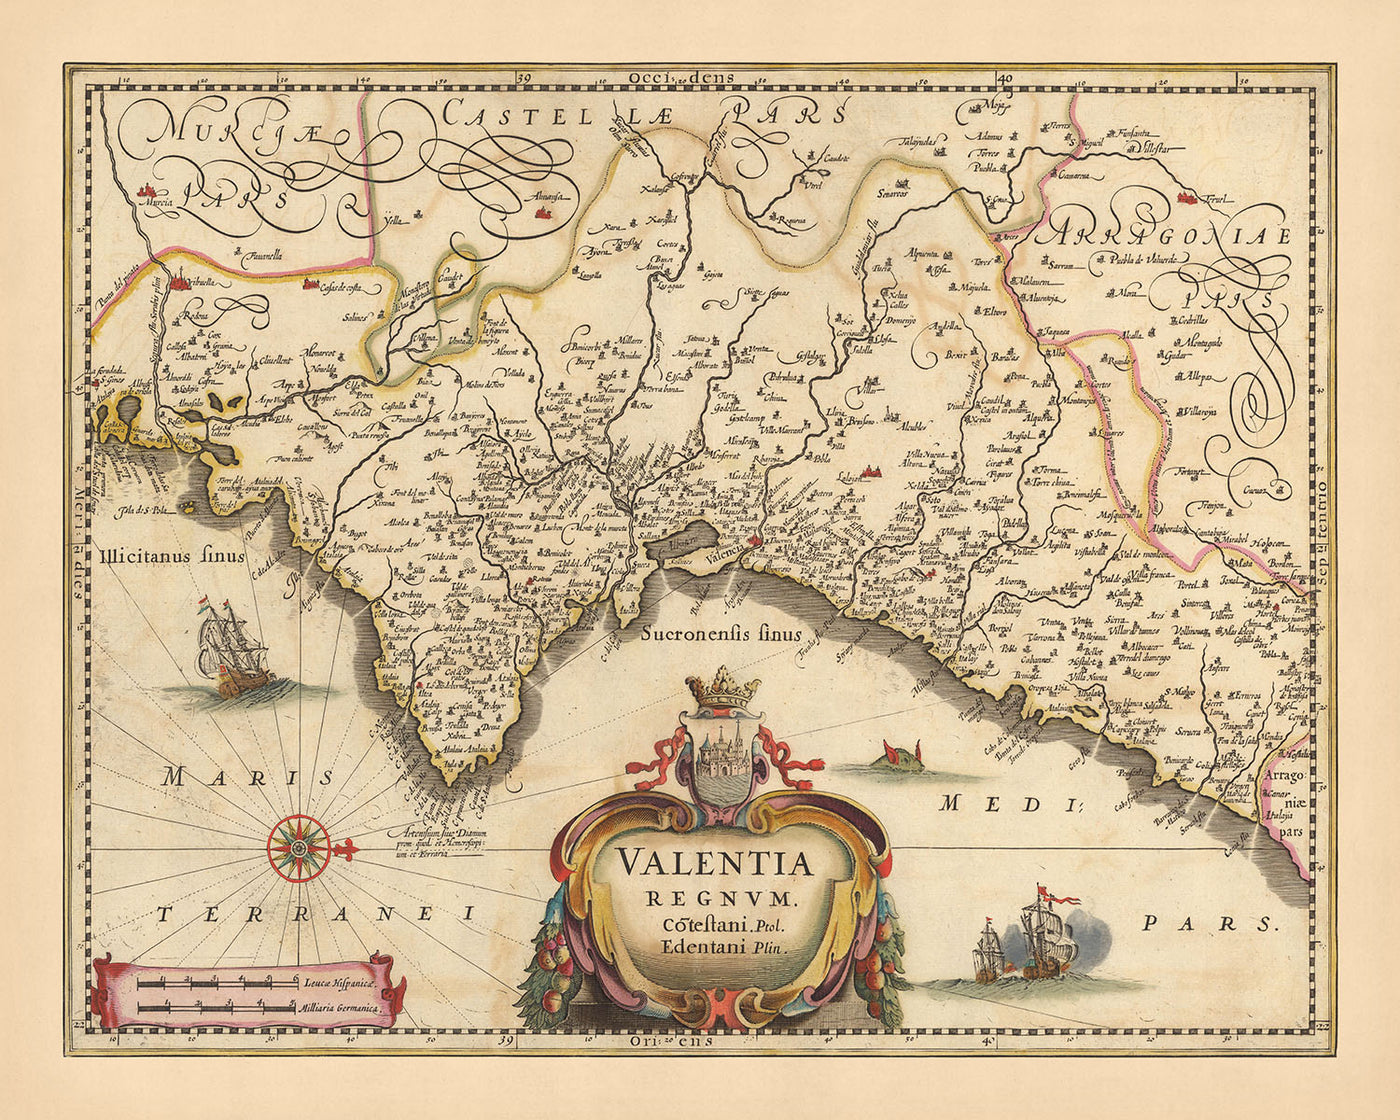 Mapa antiguo del Reino de Valencia, España de Visscher, 1690: Murcia, Valencia, Alicante, Dénia, Castellón de la Plana